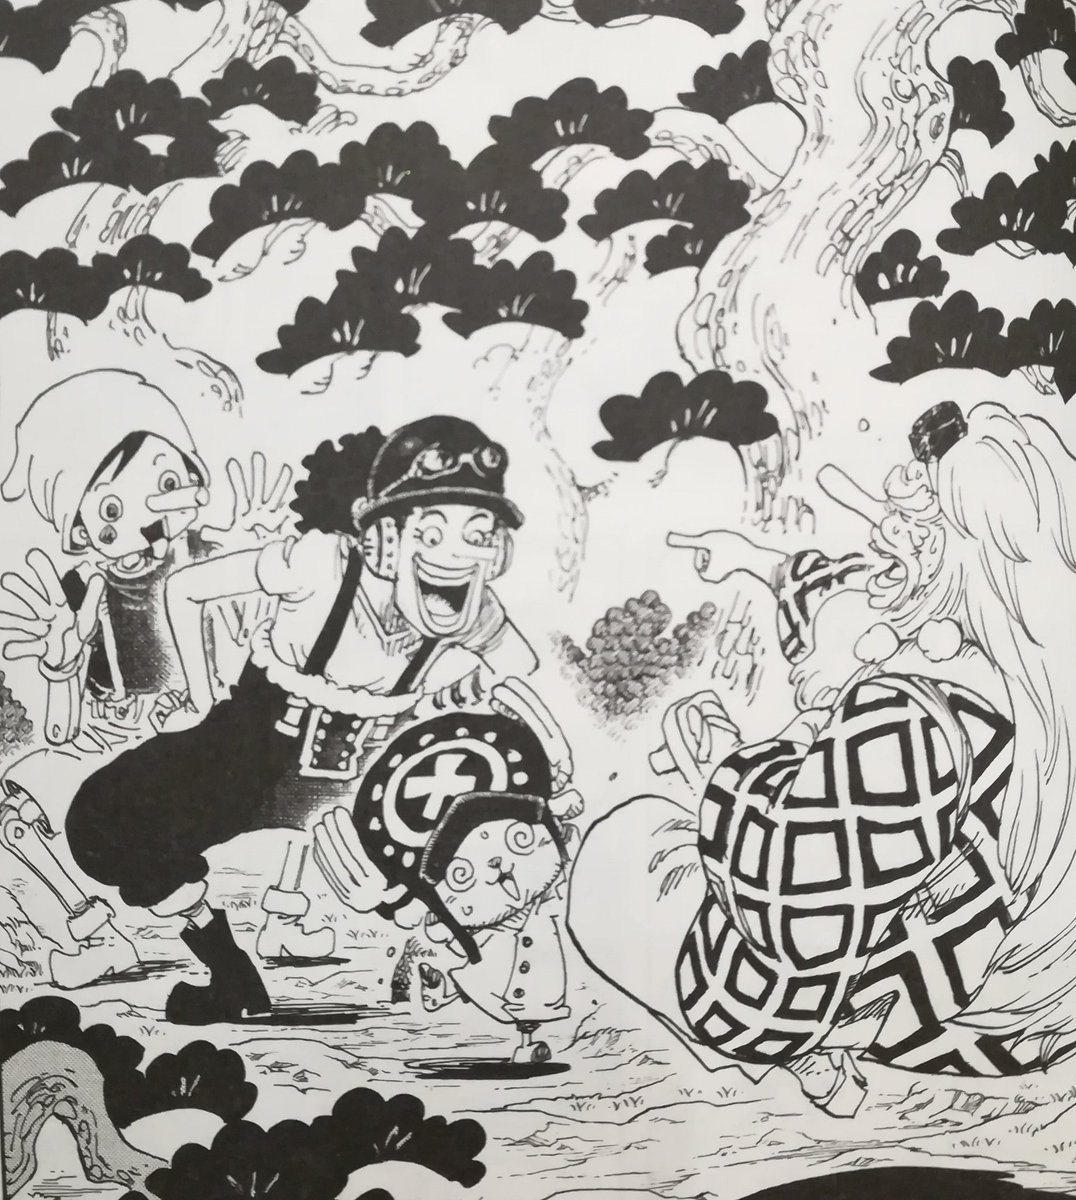 One Pieceが大好きな神木 スーパーカミキカンデ ワノ国の松は793話でもそれっぽいのが描かれてますねー その時に描いたやつ One Piece 第910話 感想 神木健児 Onepiece Kun Note ノート T Co Vm0kenqkbd